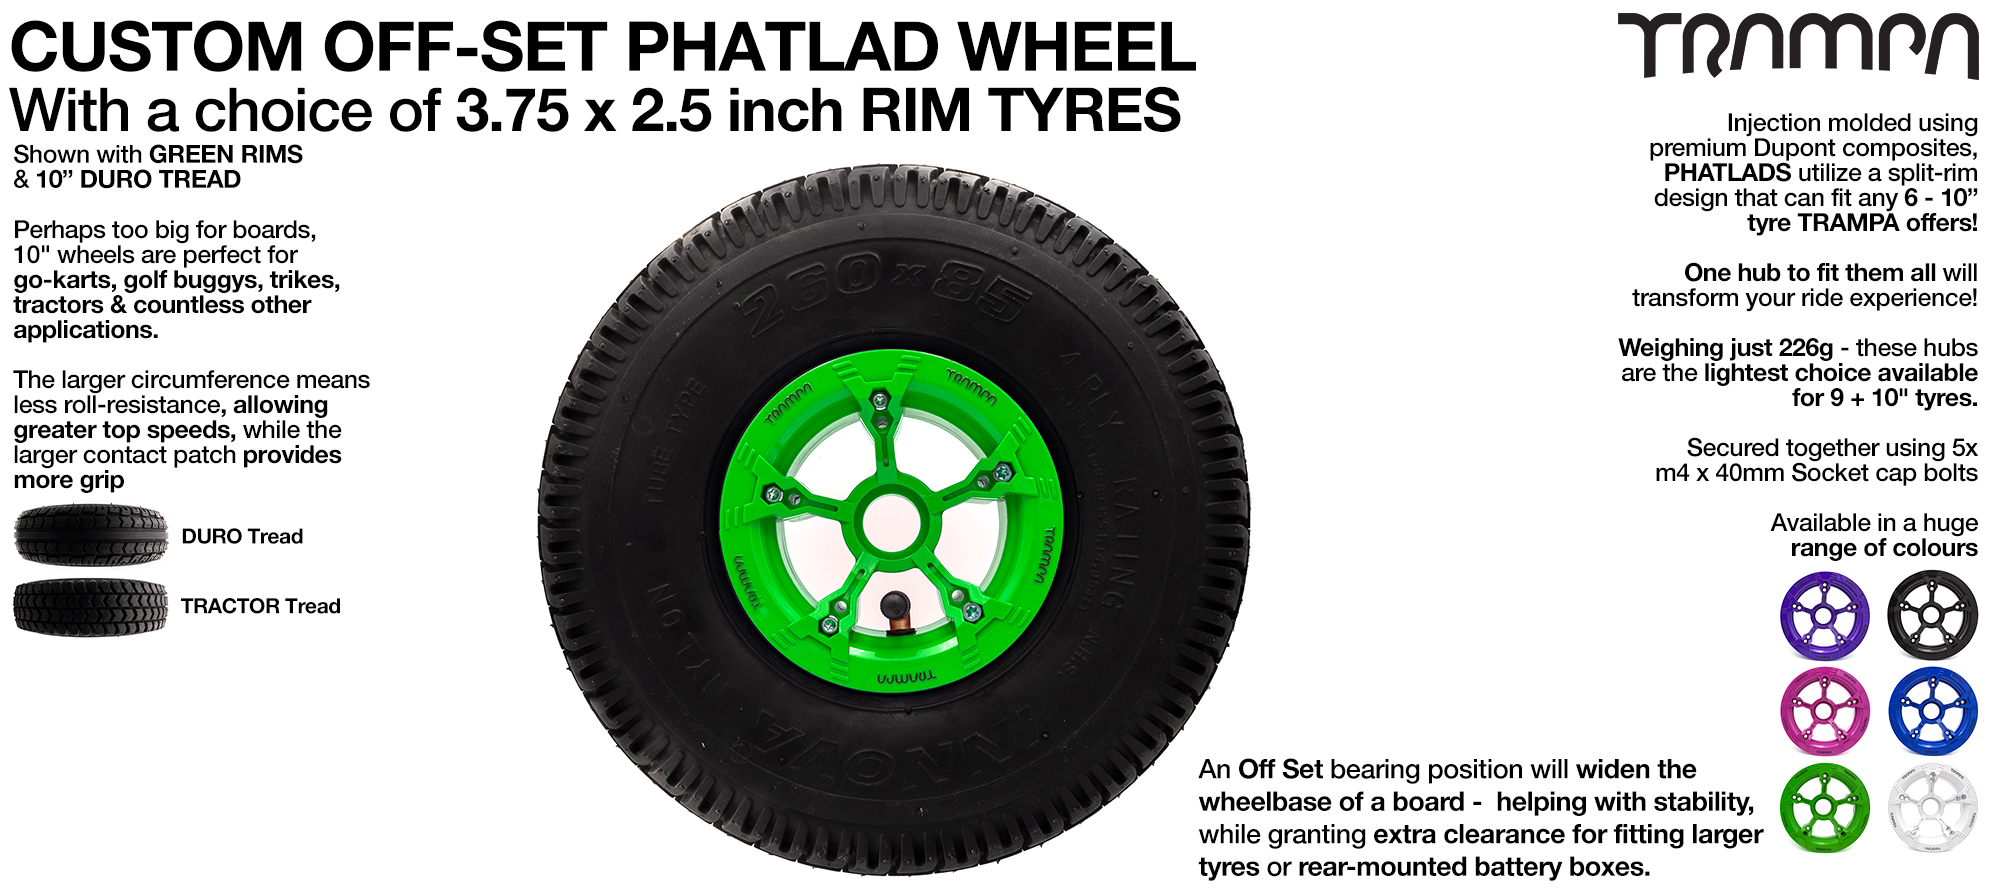 TRAMPA PHATLADS 5 spoke Wheels - 10 Inch Tyres 